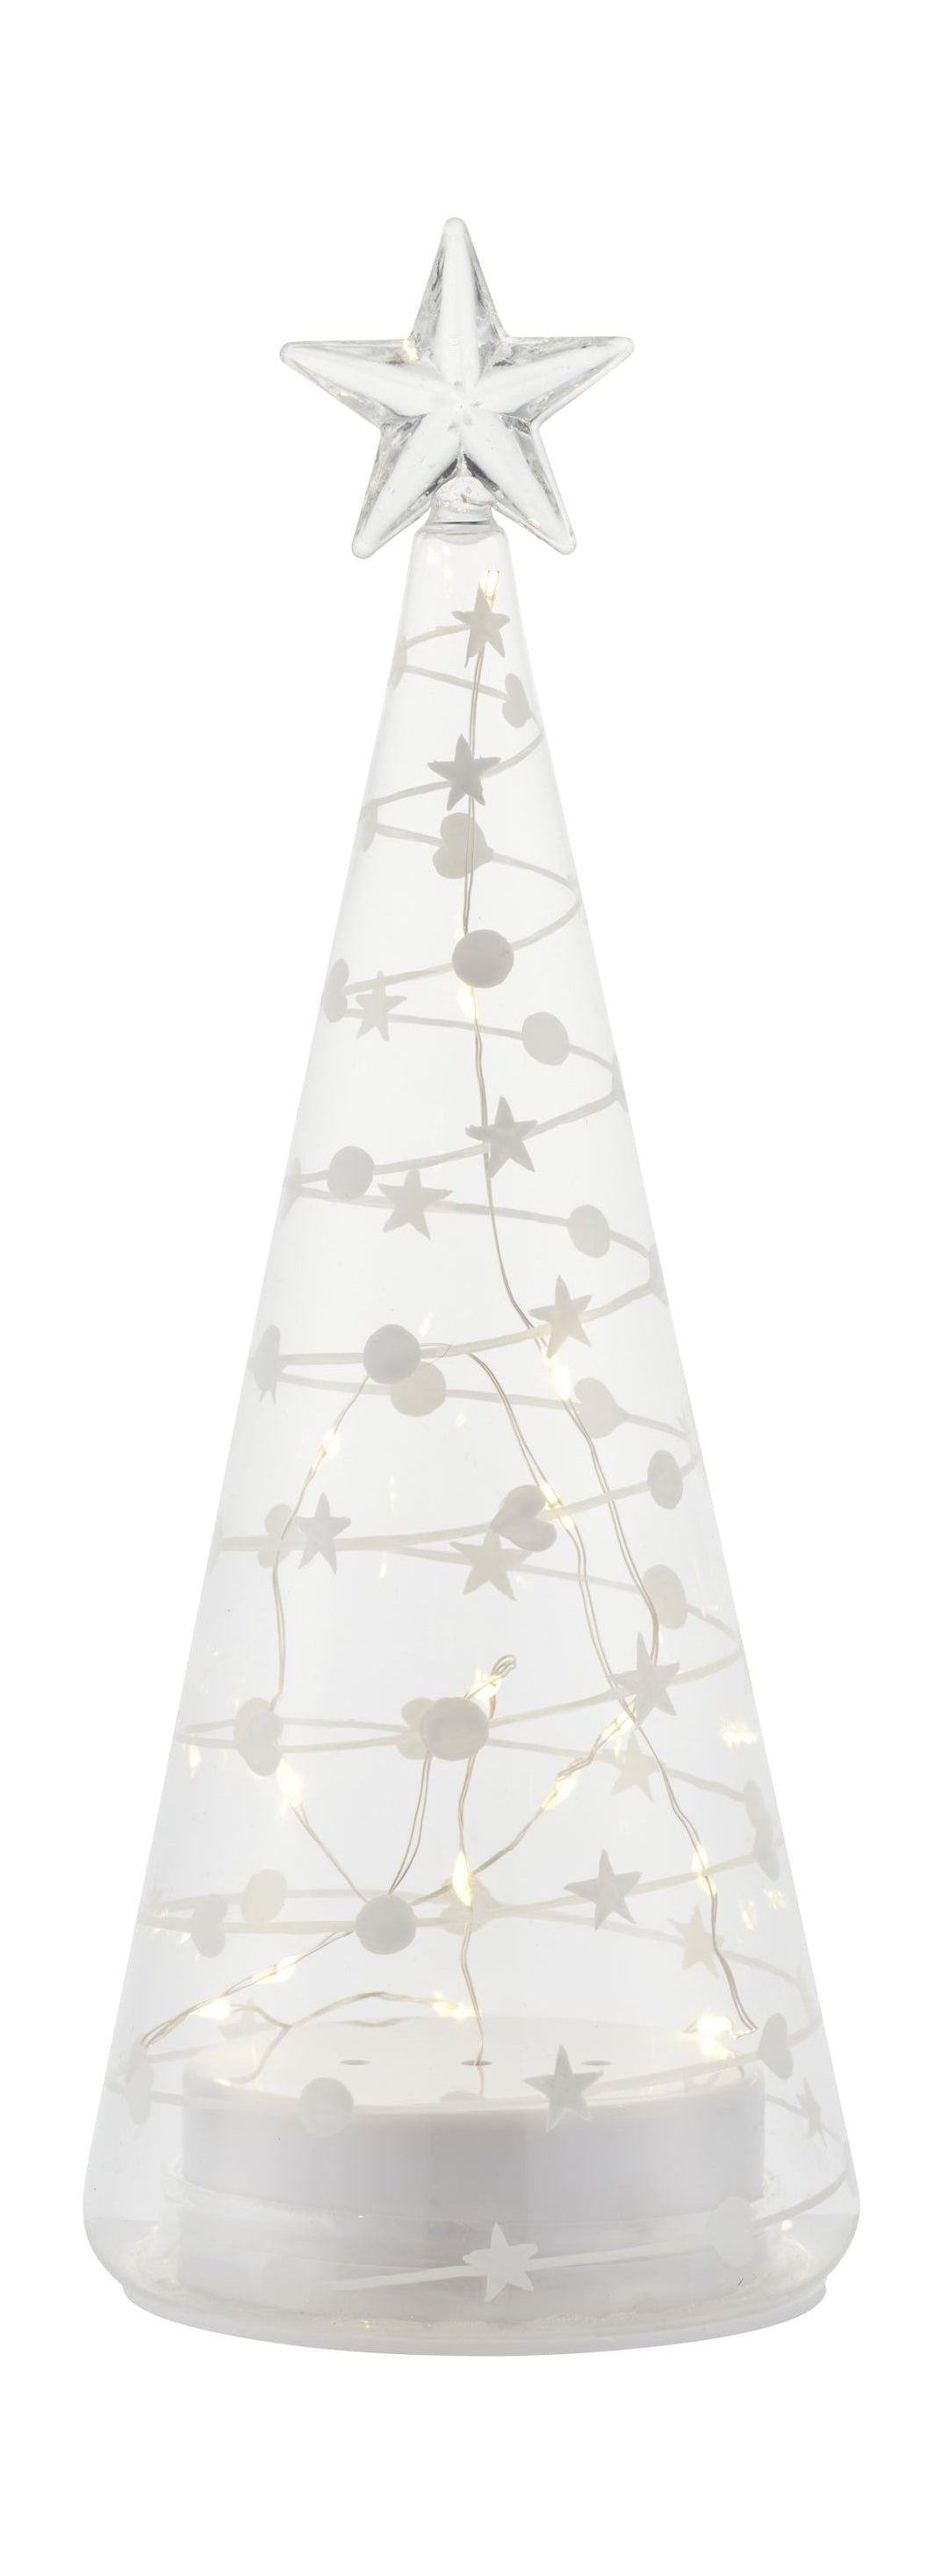 Sirius Sweet Christmas Tree, H26 cm, bílá/čistá